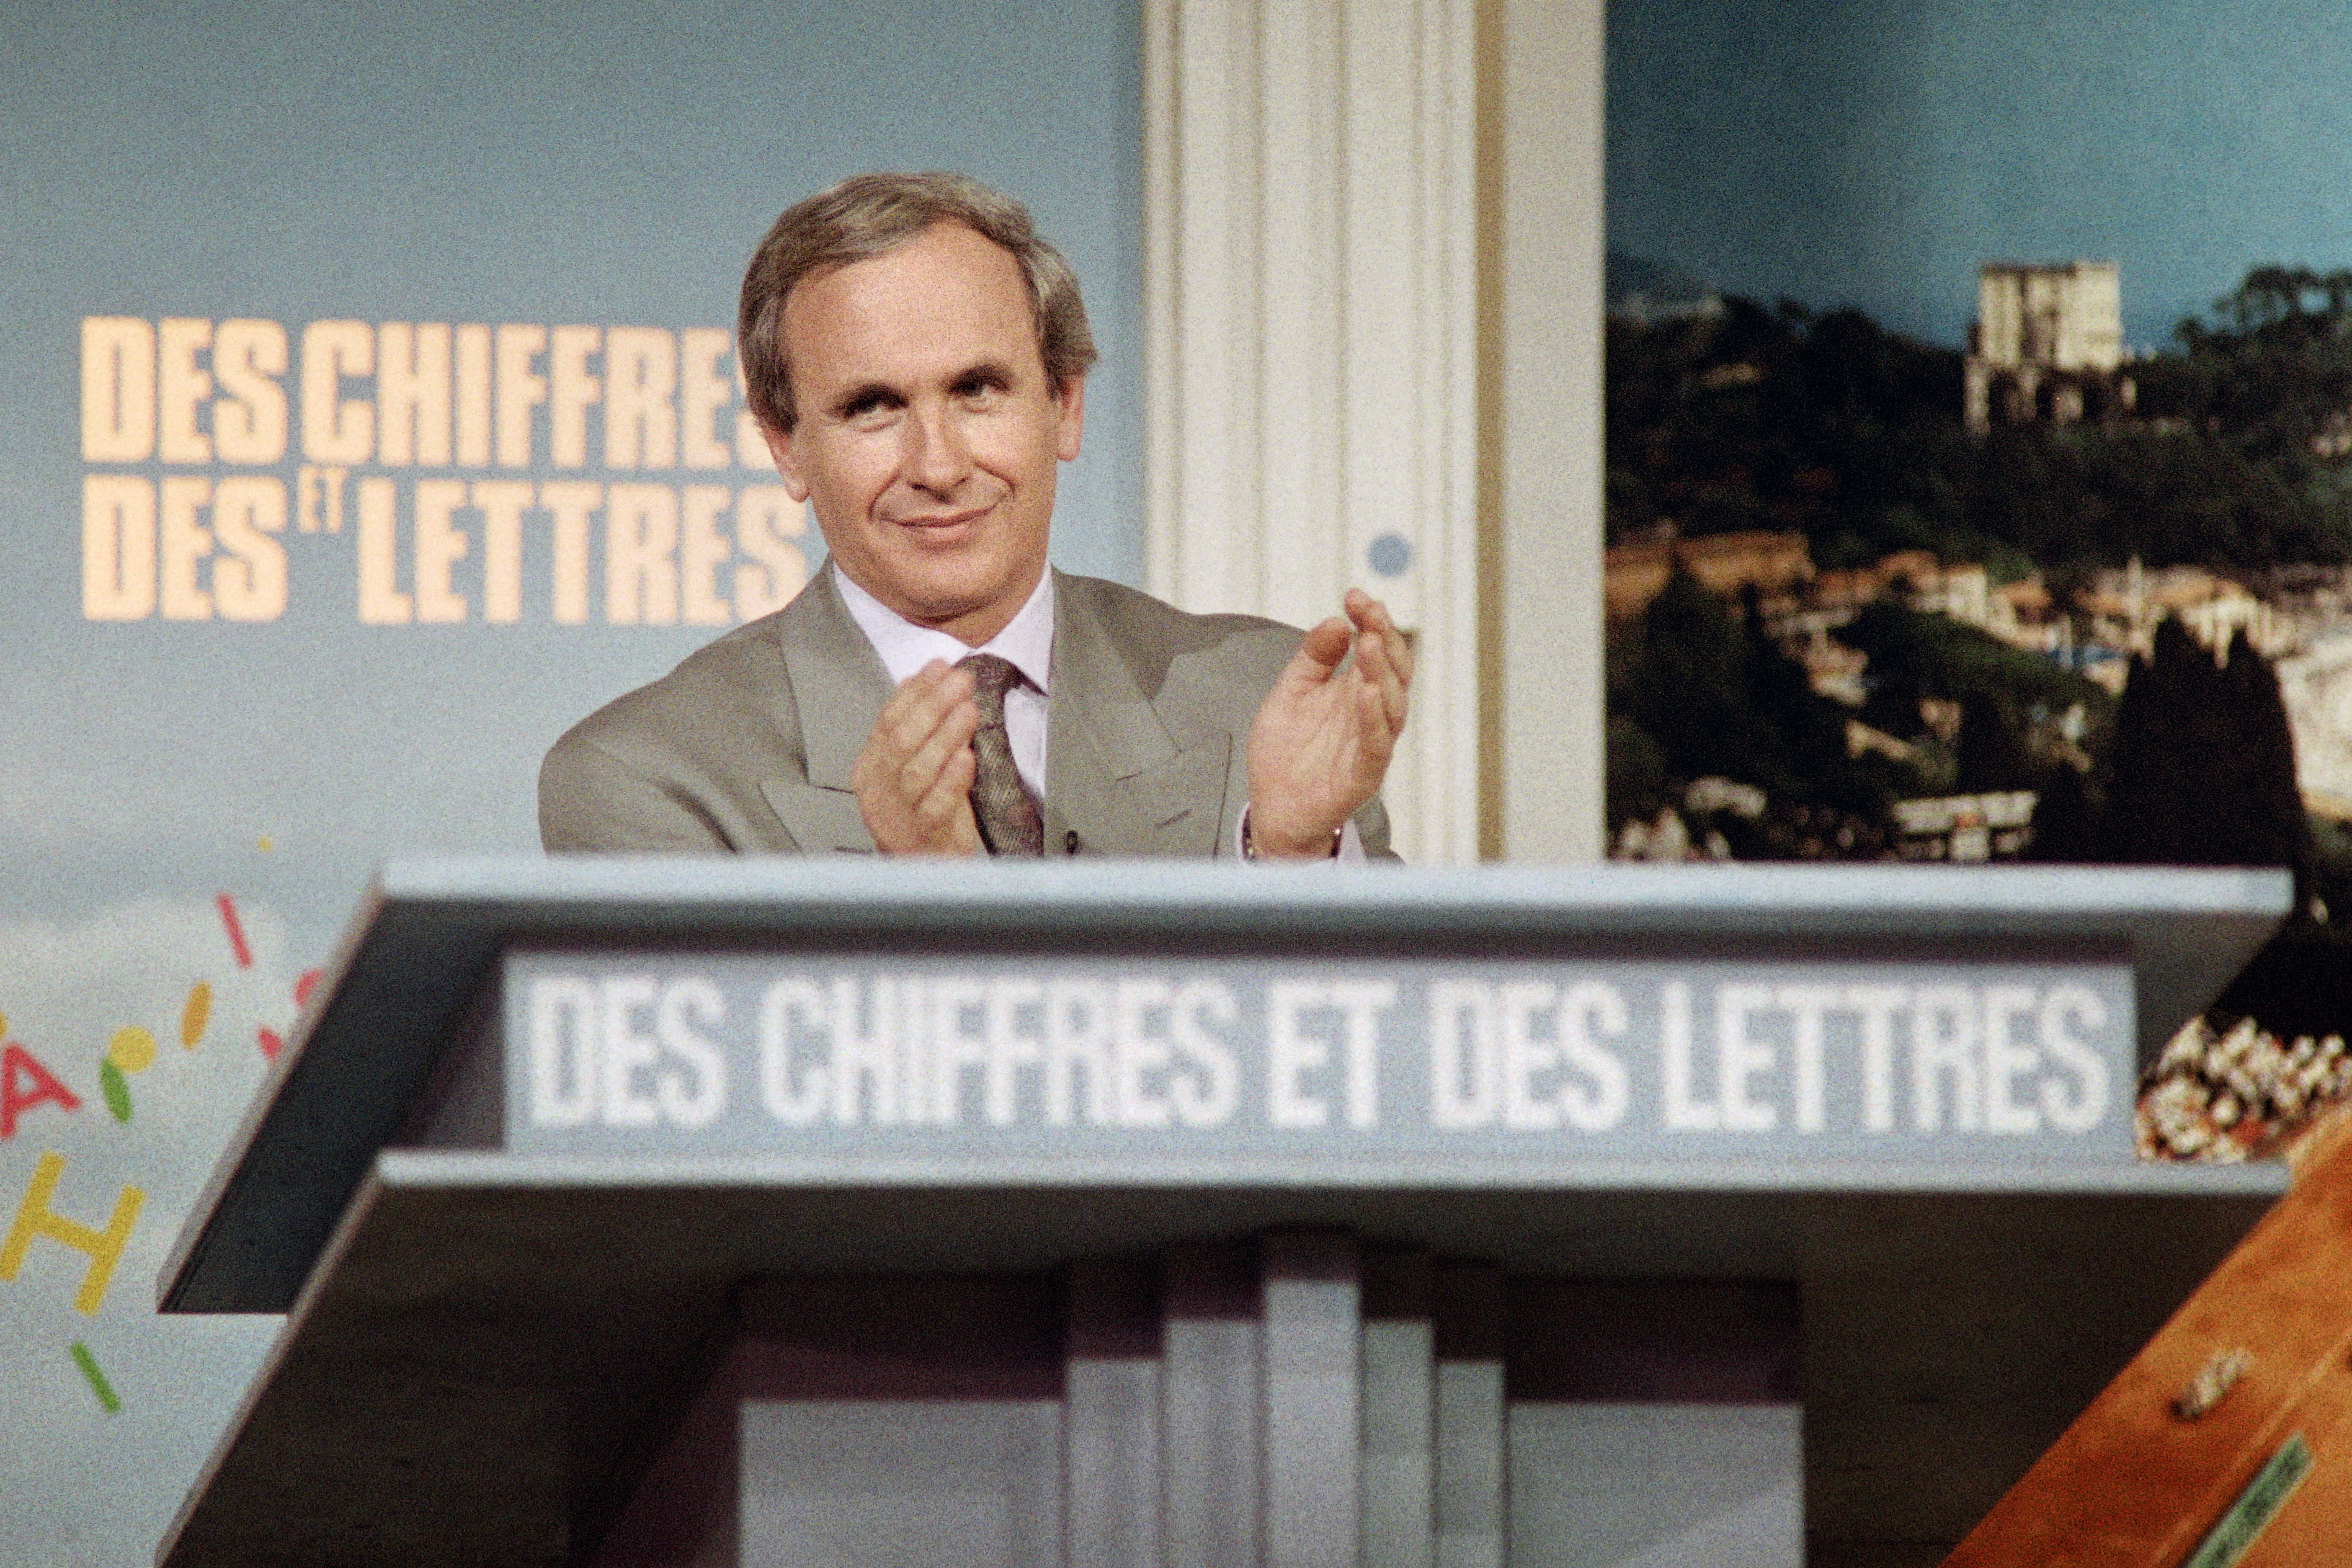 Patrice Laffont (ici sur le plateau des «Chiffres et des lettres» en 1989) a présenté le jeu entre 1972 et 1989 et en est toujours le producteur actuellement. AFP/Gérard Julien